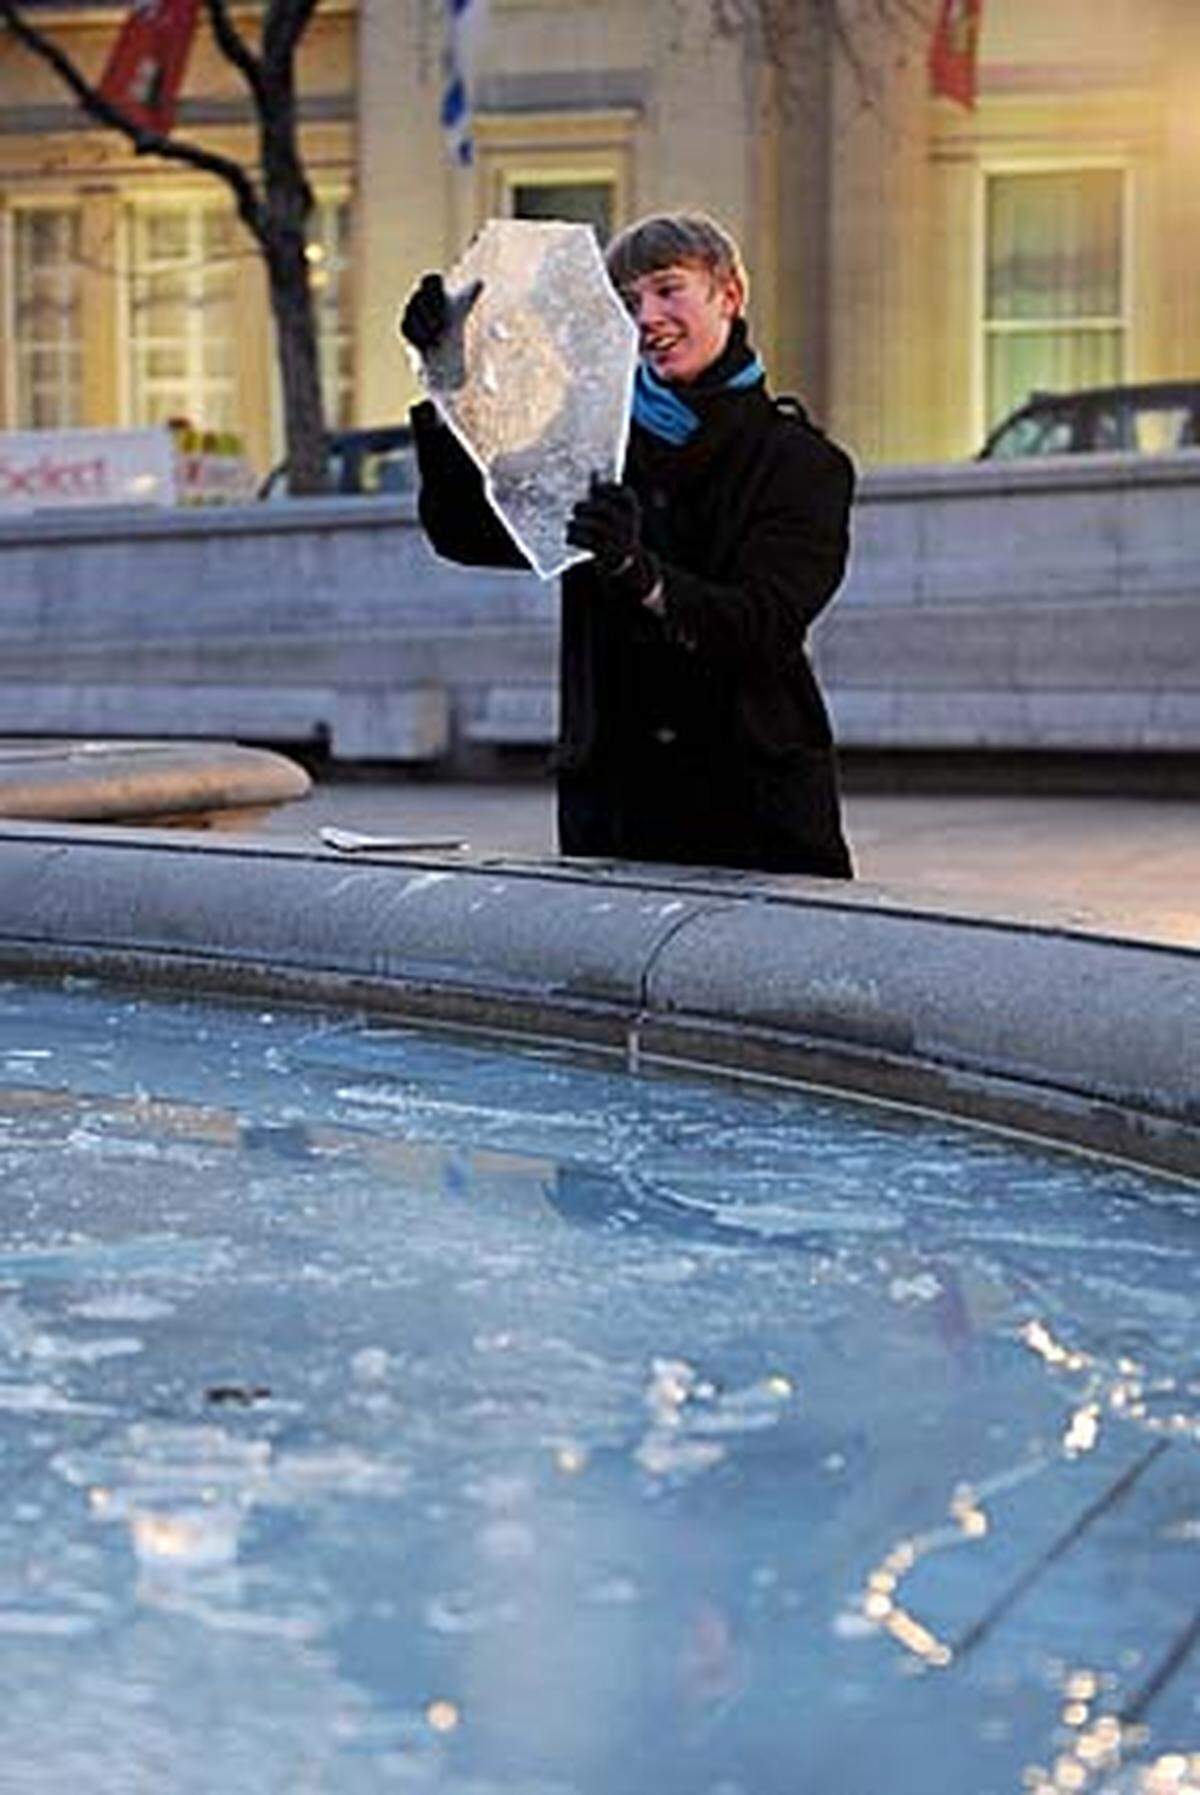 Am zentralen Trafalgar Square in London, Britain gefror das Wasser des Springbrunnens. Im südlichen England und in Wales wurden minus acht Grad gemessen. Meteorologen sagen einen weiteren Temperatursturz in Hampshire und Schottland voraus.